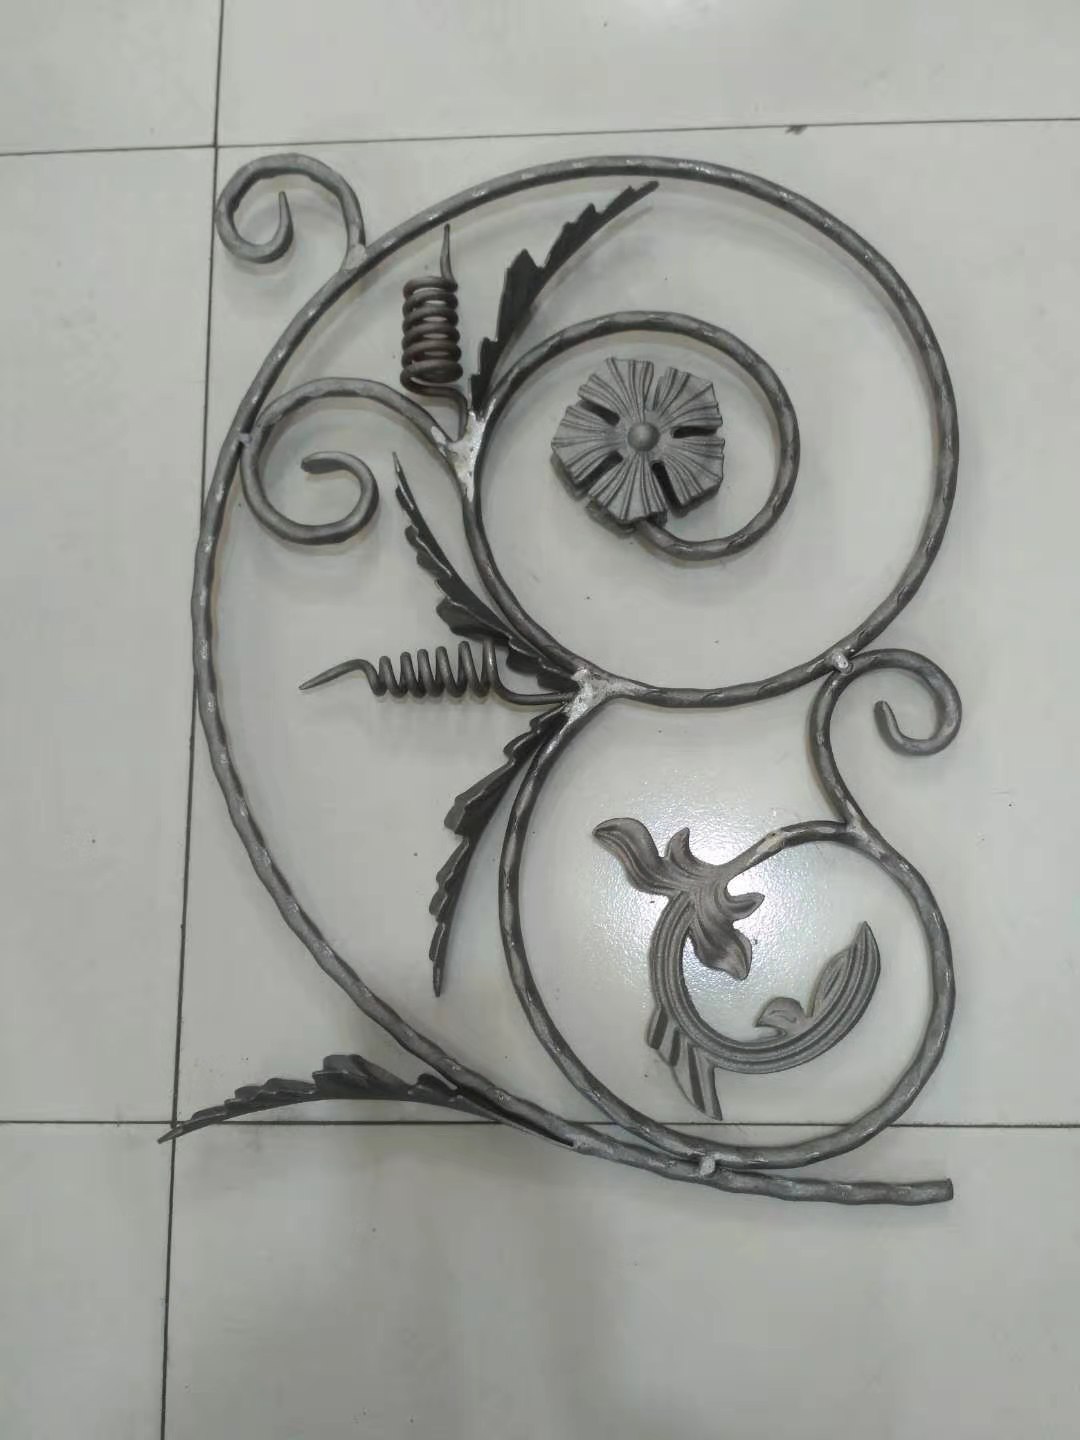 wasan zorro da ƙofar ornamental yi baƙin ƙarfe ado panel yi baƙin ƙarfe rosettes